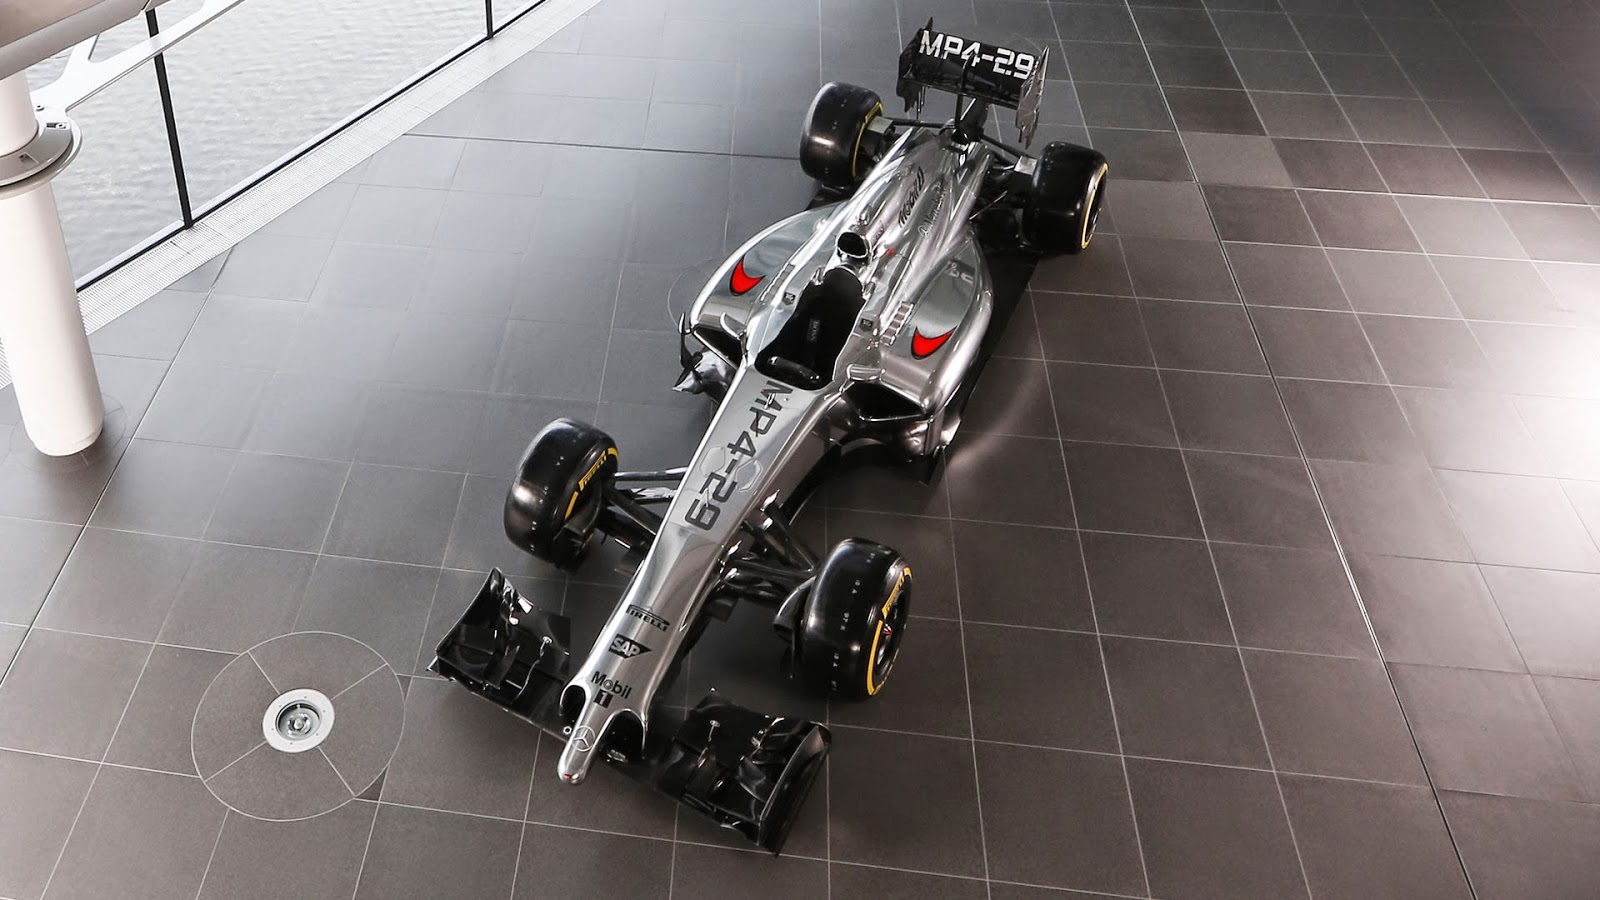 2014 McLaren MP4 29